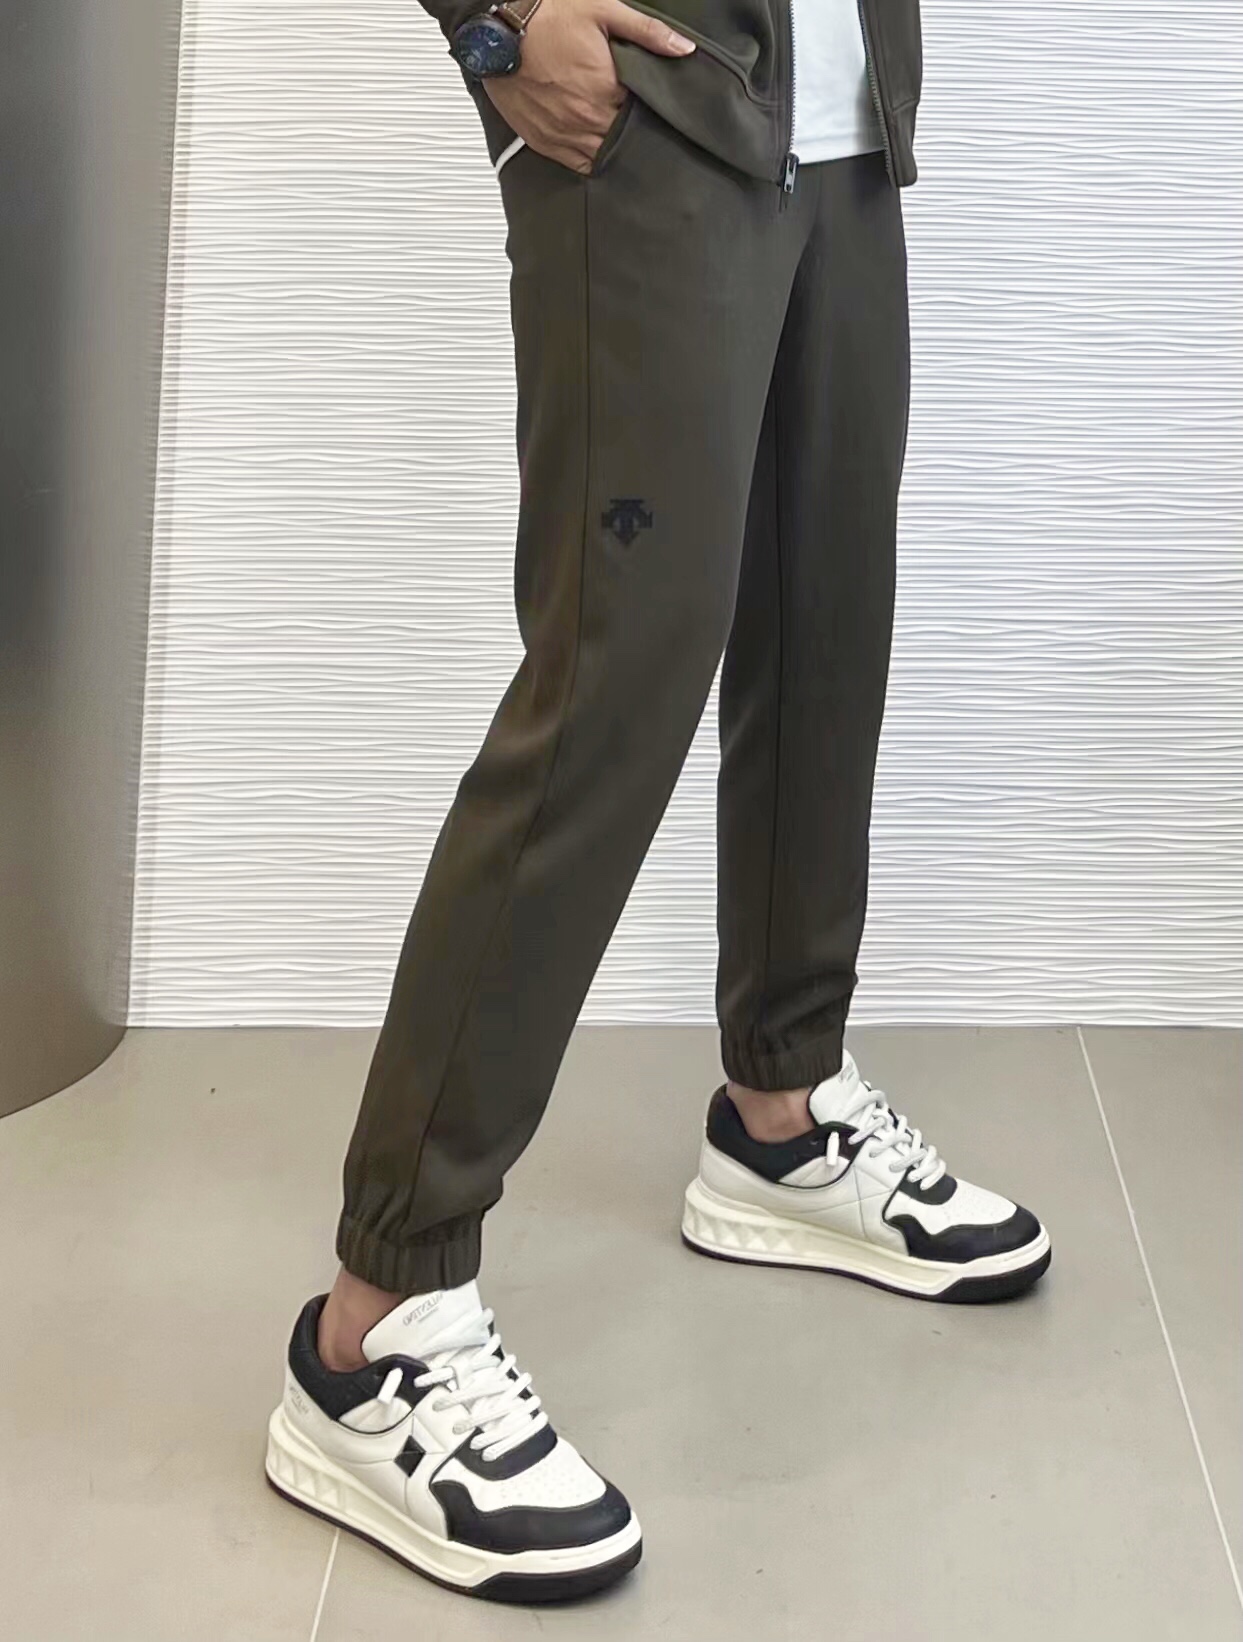 デサント日本激安通販 シンプル アウター ズボン 柔らかい 運動セット ファッション 男女兼用 3色可選 ブラウン_6